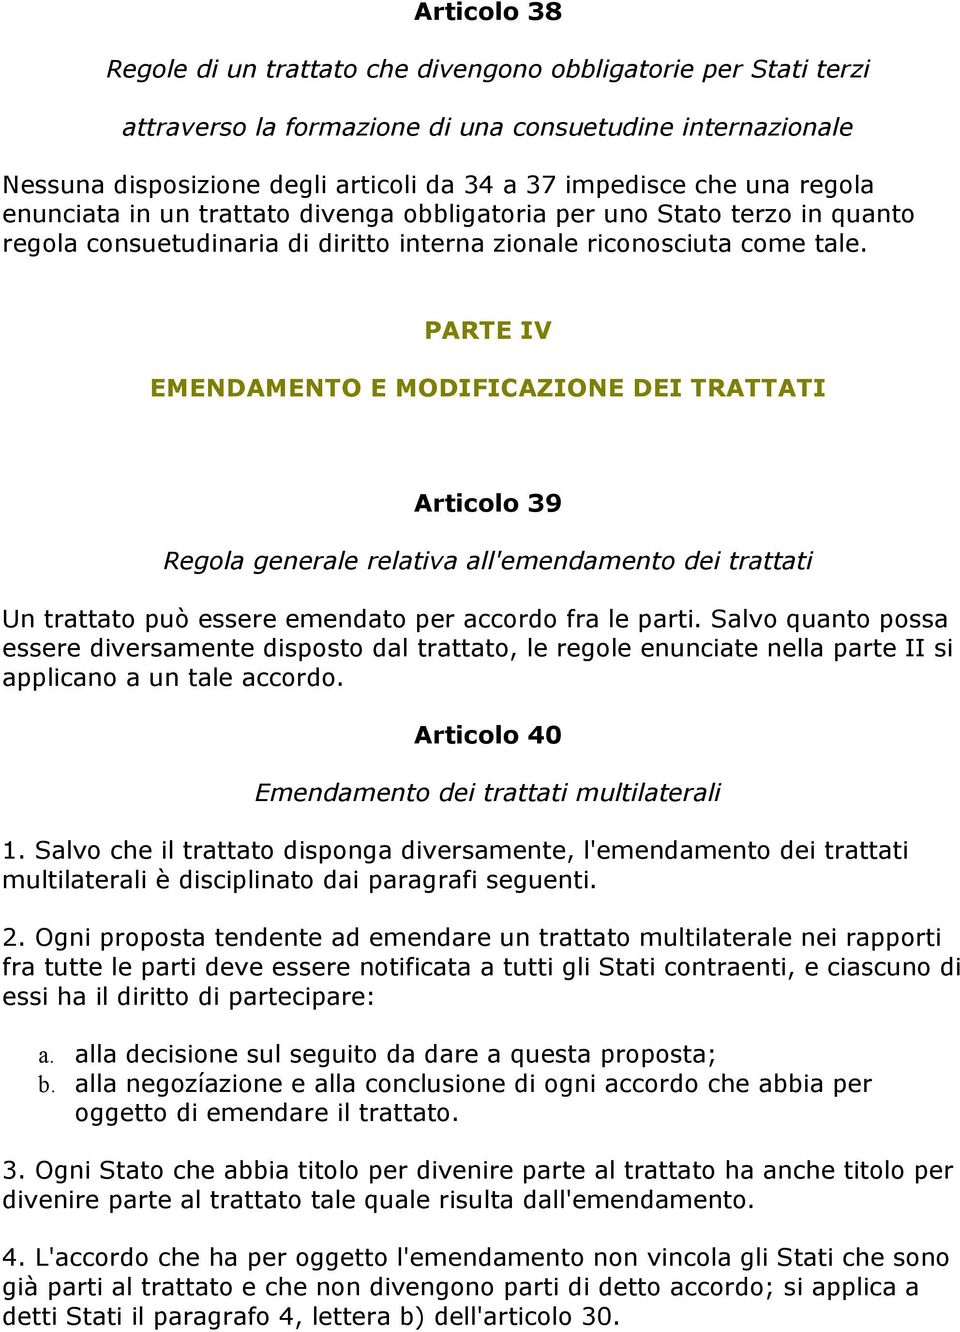 PARTE IV EMENDAMENTO E MODIFICAZIONE DEI TRATTATI Articolo 39 Regola generale relativa all'emendamento dei trattati Un trattato può essere emendato per accordo fra le parti.